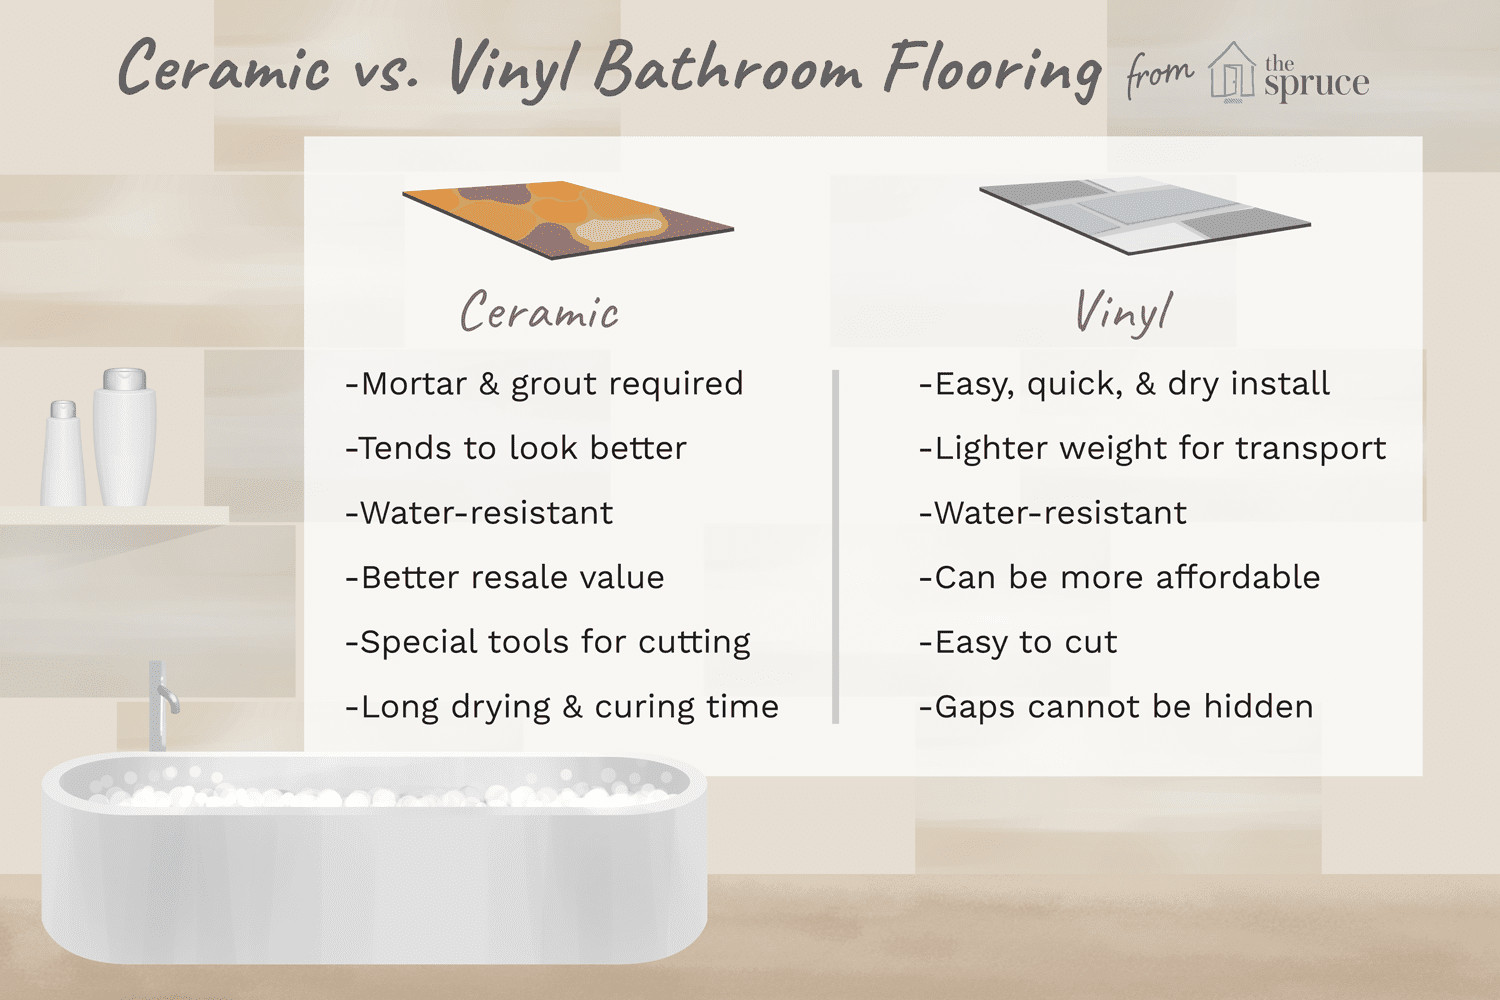 hardwood floors vs porcelain tile of bathroom vinyl tile vs ceramic tile inside bathroom ceramic tile vs vinyl plank 1822815 final 5bae841646e0fb002670b7c6